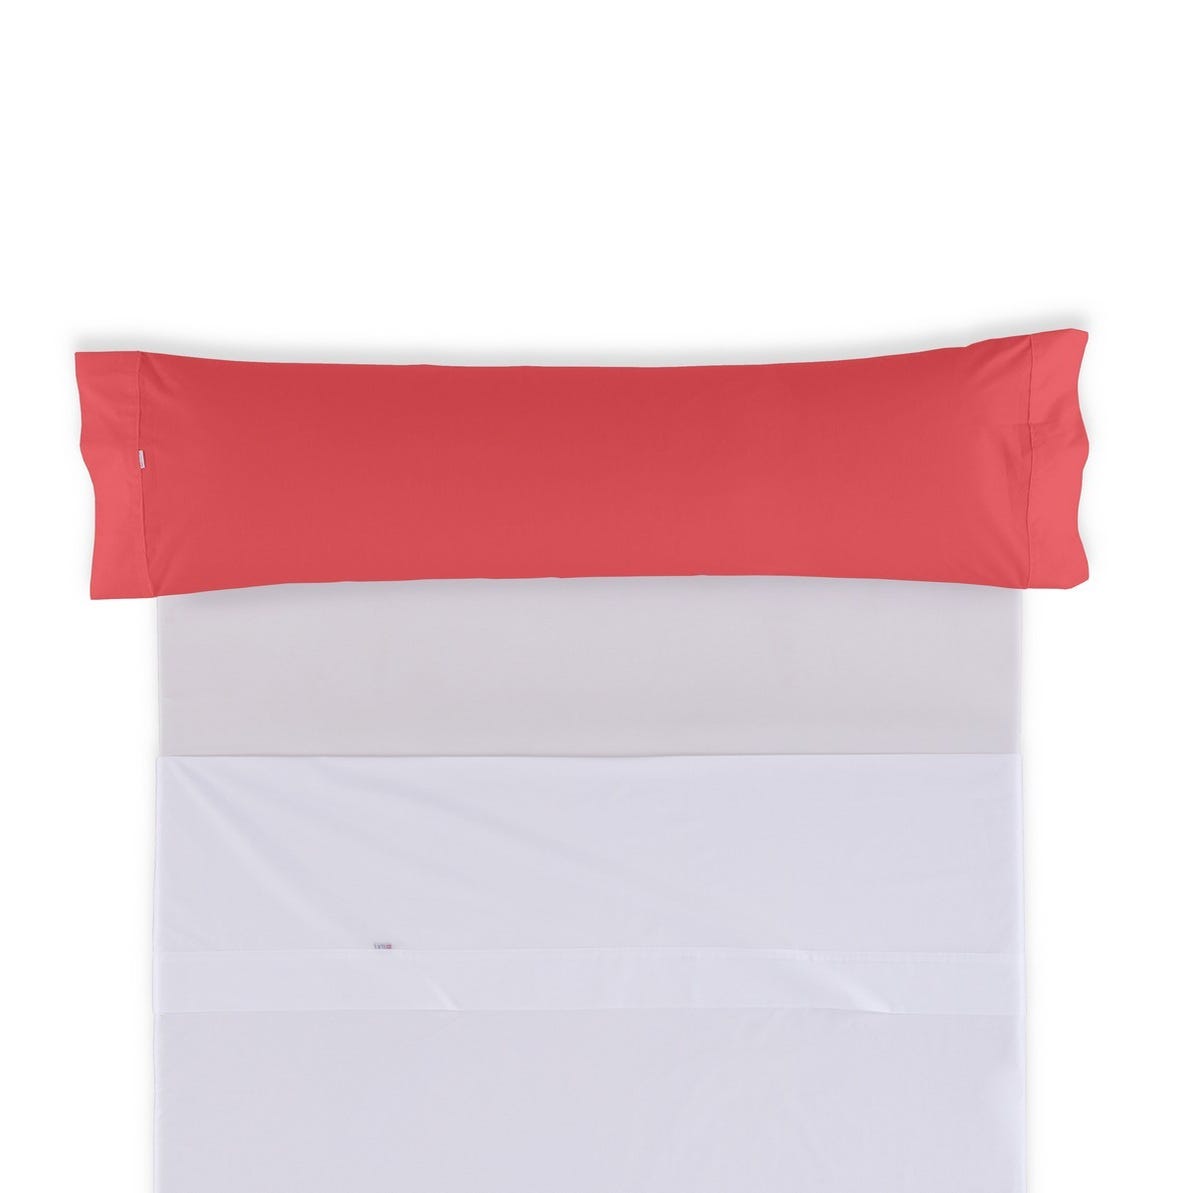 Pack de 2 Fundas de Almohada Polialgodón Color Rojo 45 x 90 cm